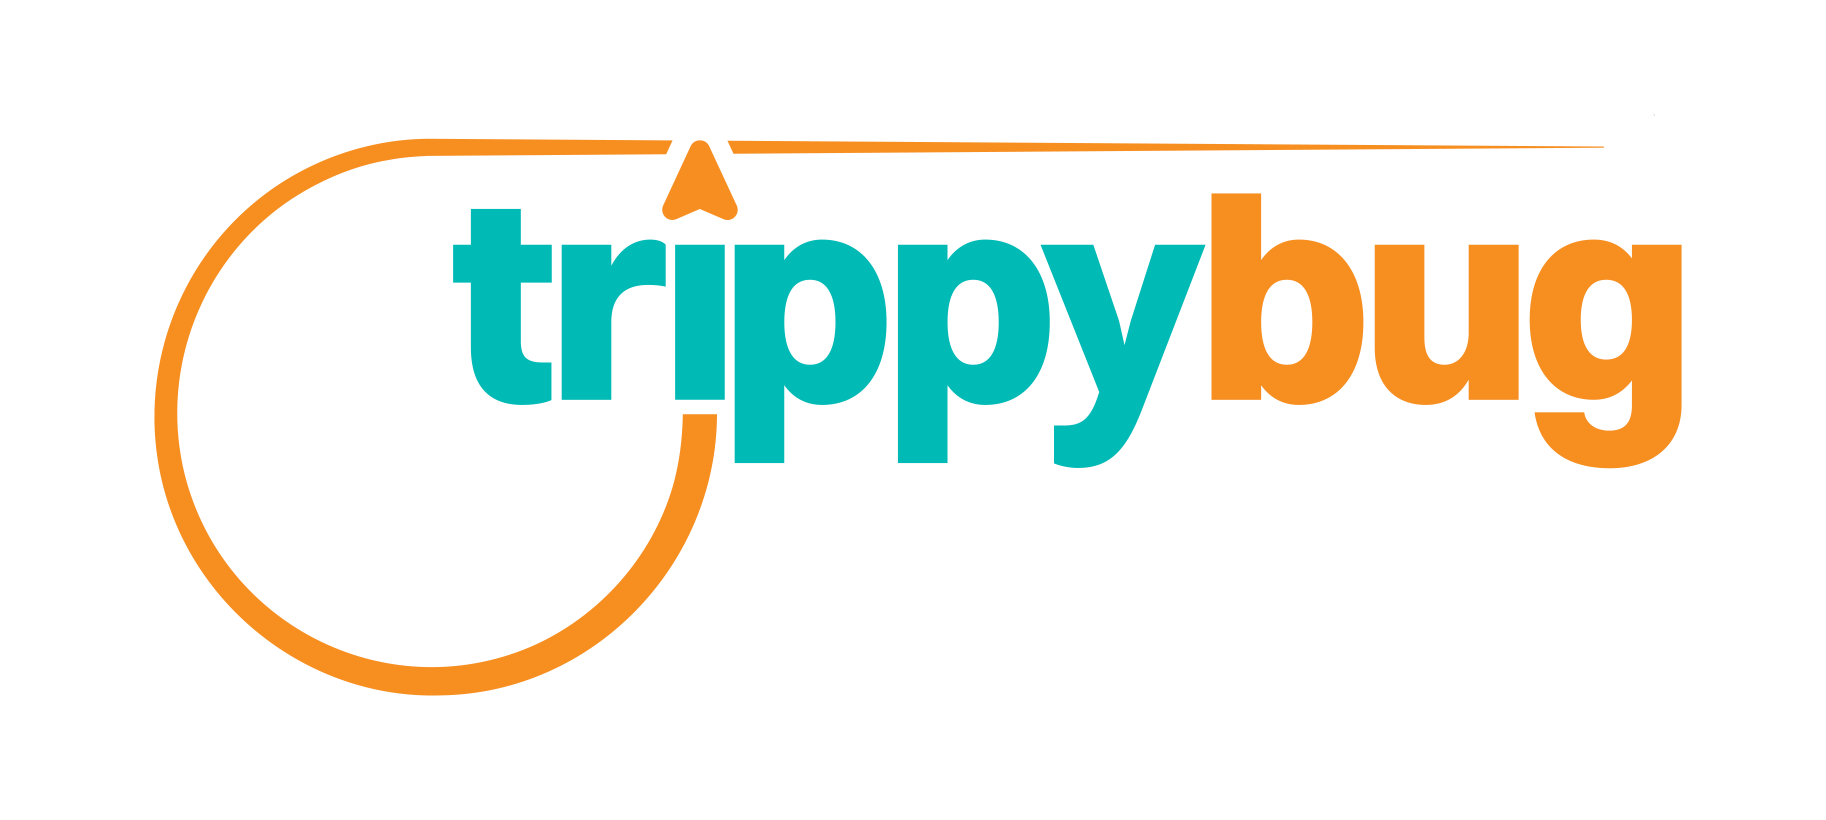 TrippyBug logo